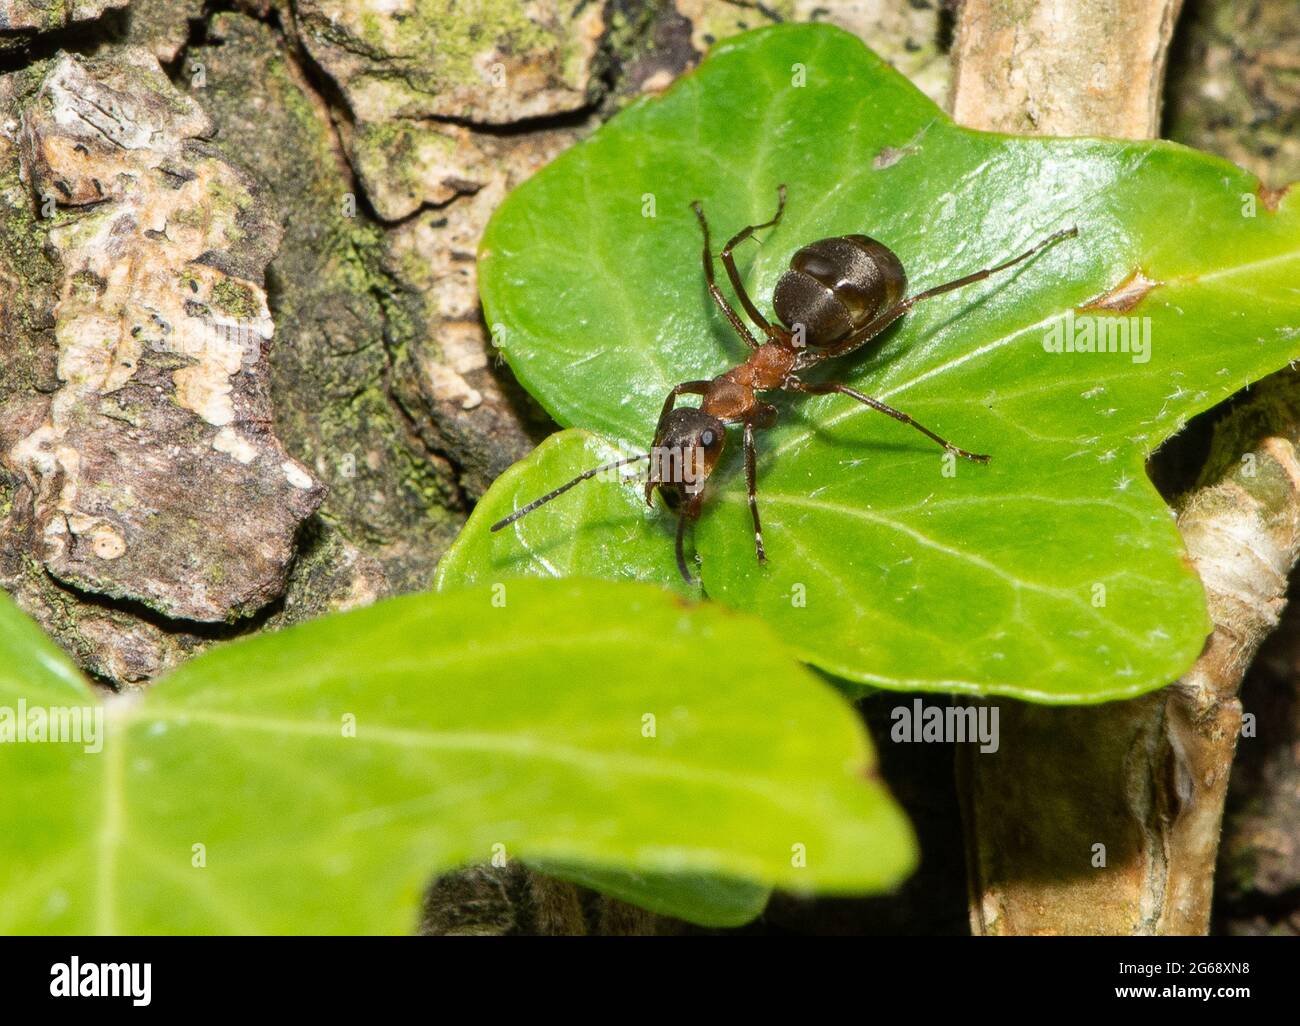 Una hormiga de madera del sur, Arnside, South Cumbria, Reino Unido. Foto de stock